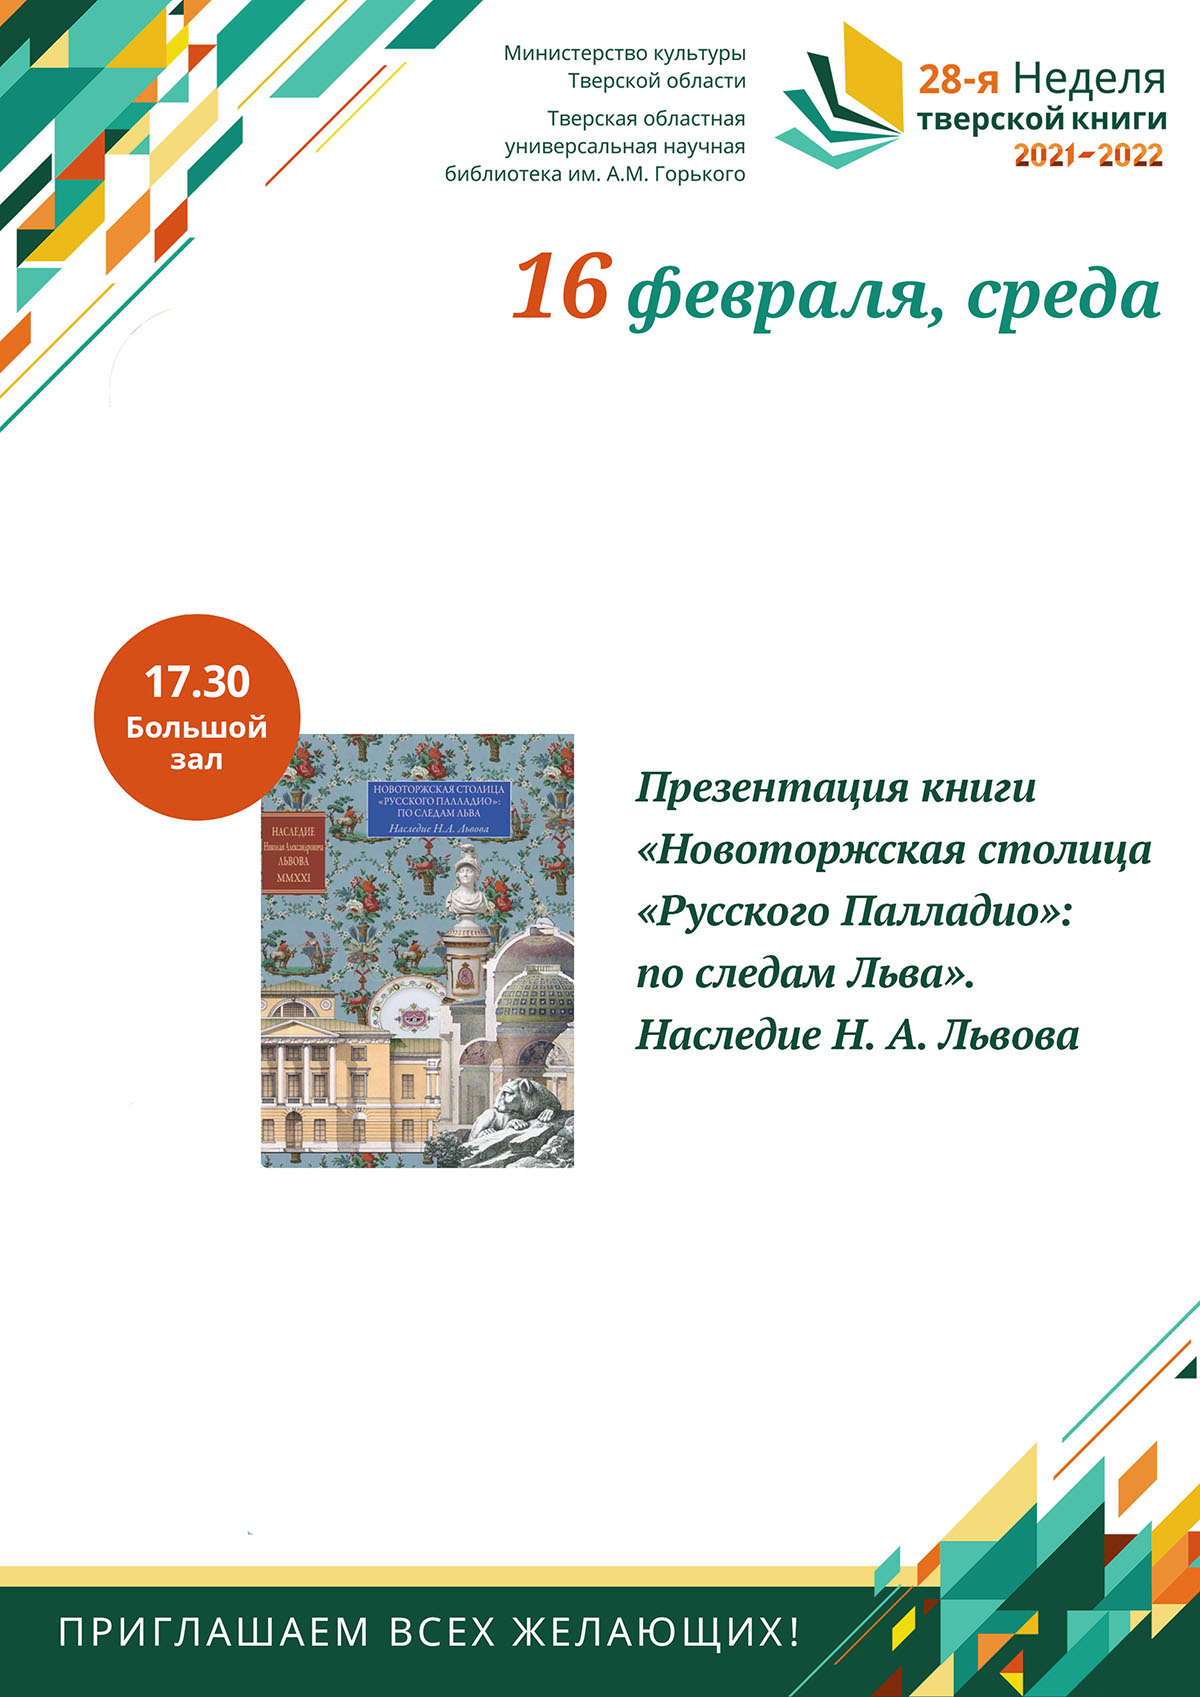 Презентация книги Евгения Ступкина «Михайло Сердюков – Бароно Имегенов»